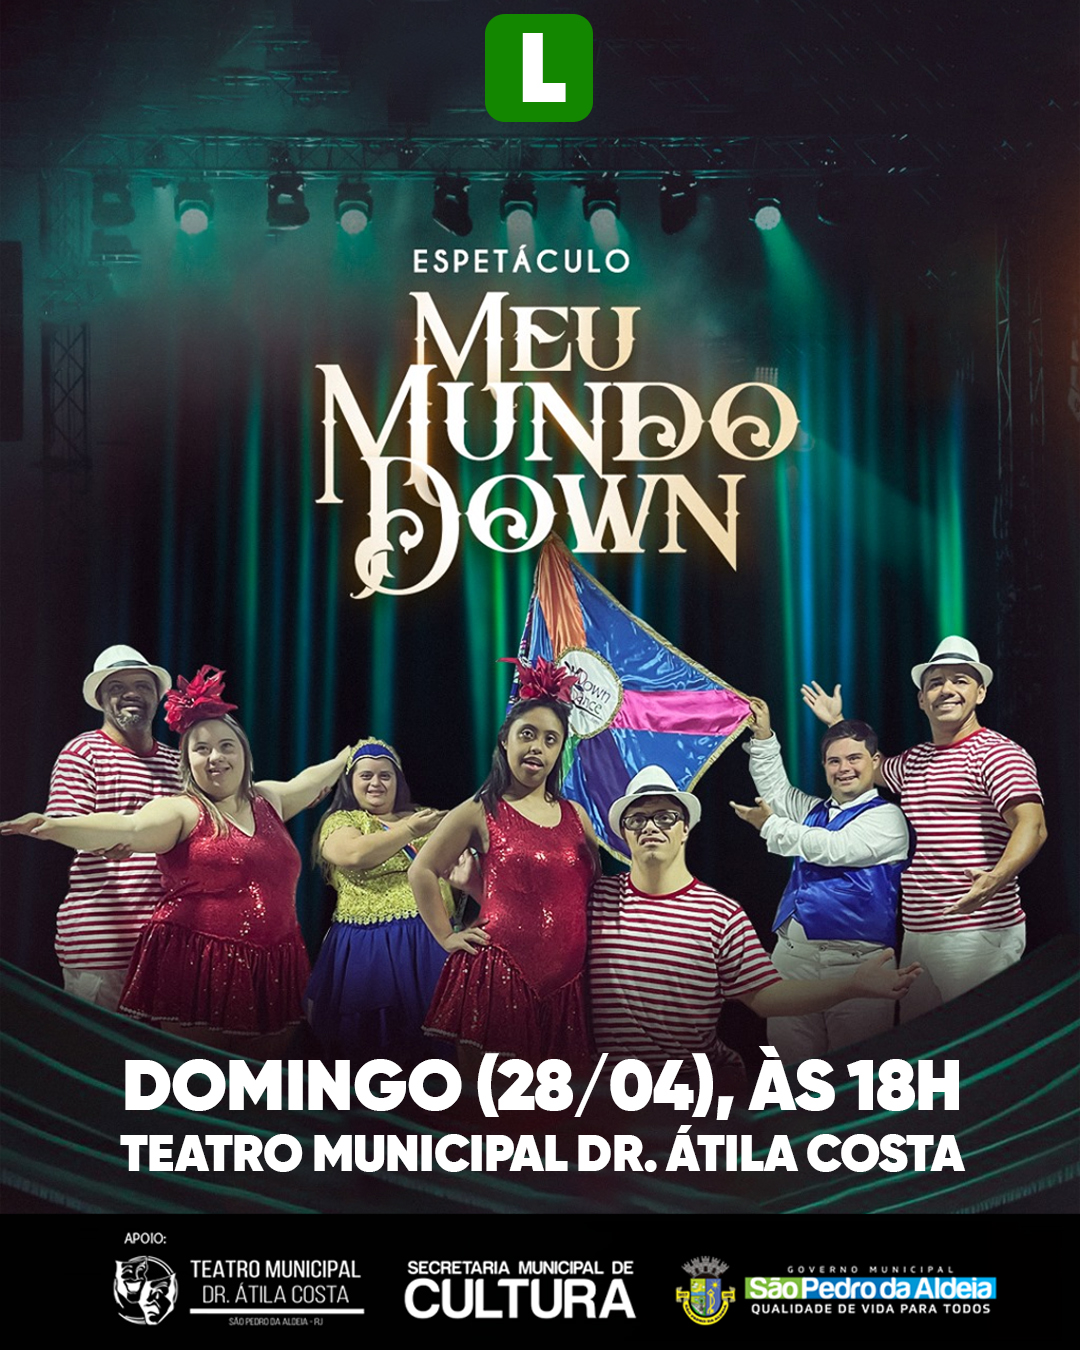 São Pedro da Aldeia: Espetáculo de dança “Meu Mundo Down” é atração no Teatro Municipal neste domingo (28)